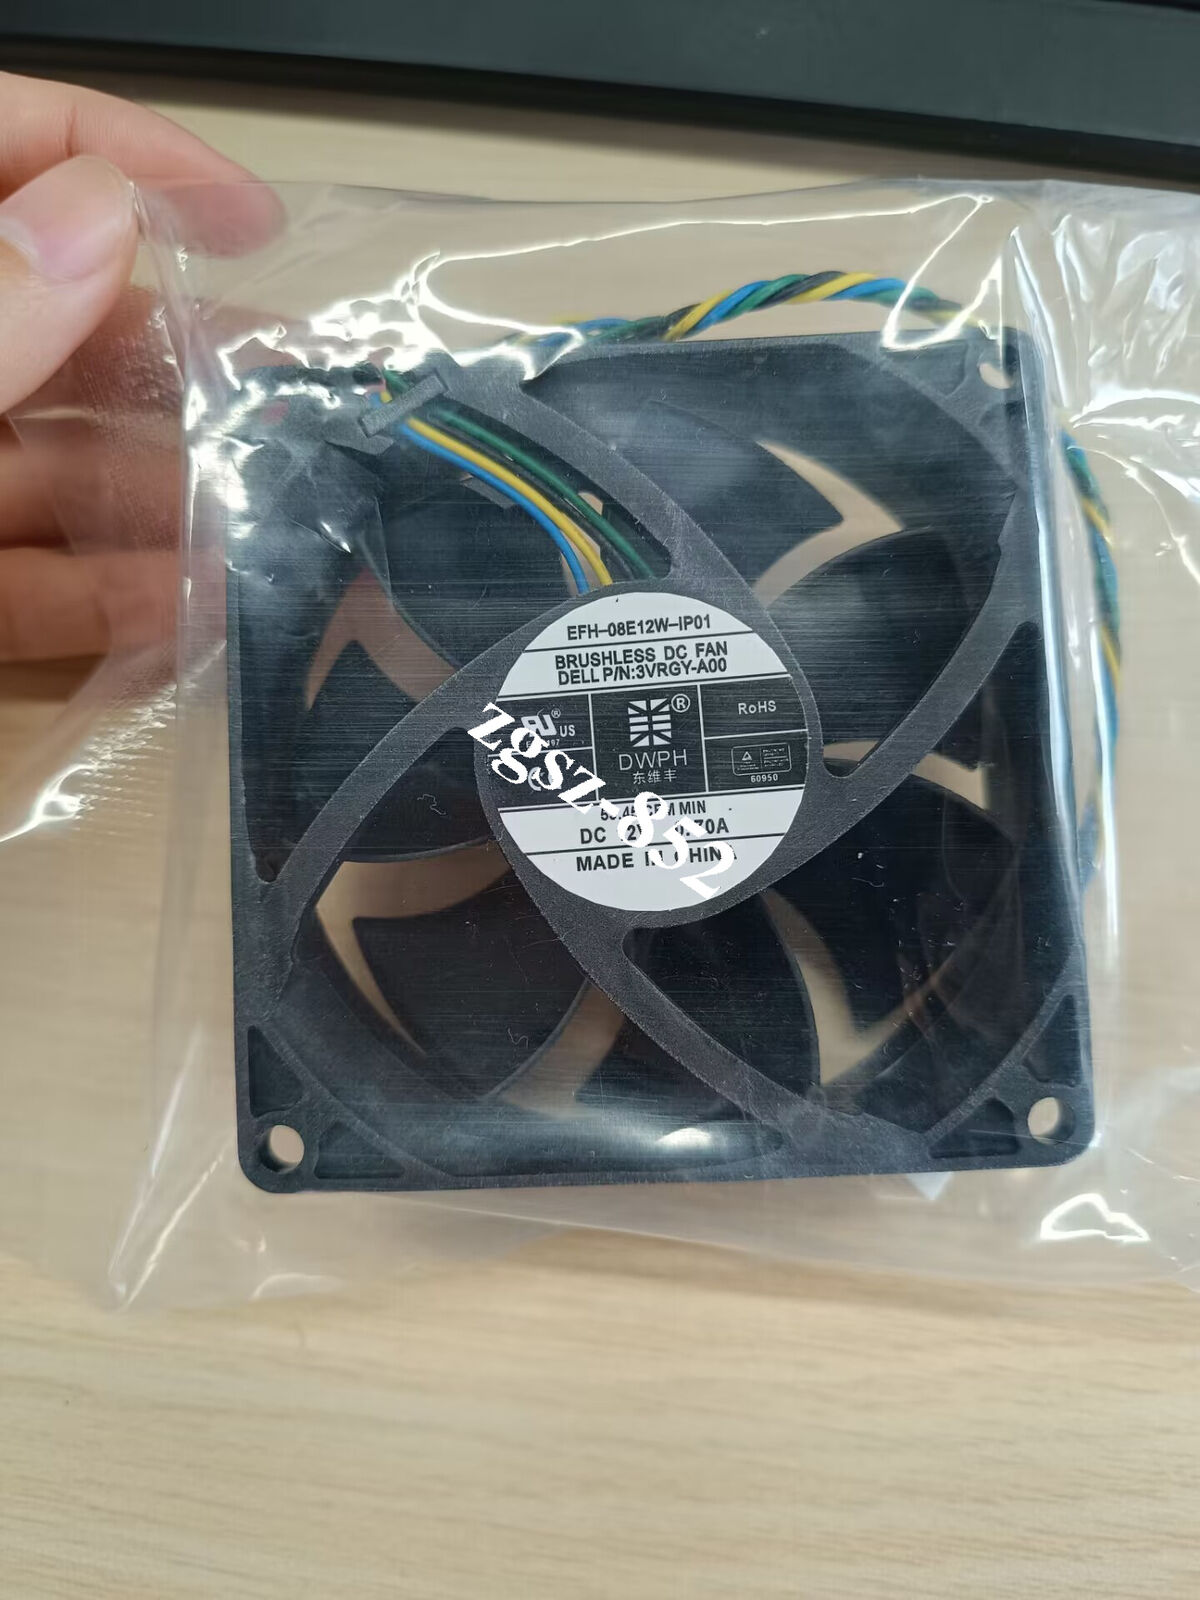 EFH-08E12W-IP01 3VRGY-A00 8cm 8025 80mm DC12V 0.70A Dell server CPU  cooling fan